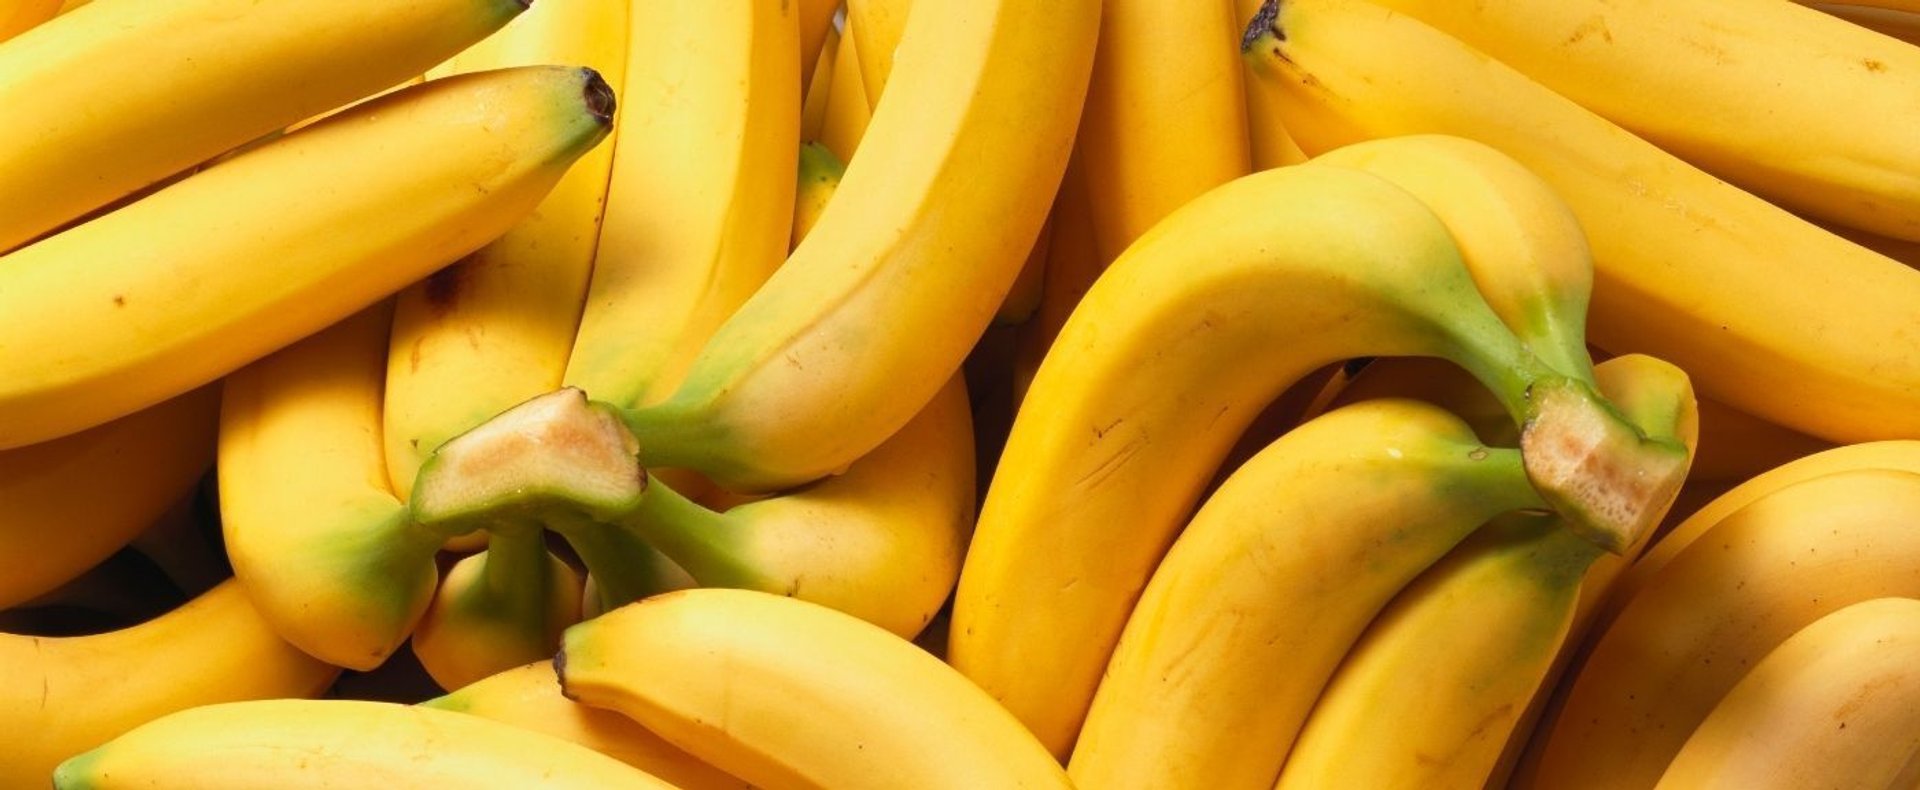 Banany powinno się jadać w odpowiedni sposób